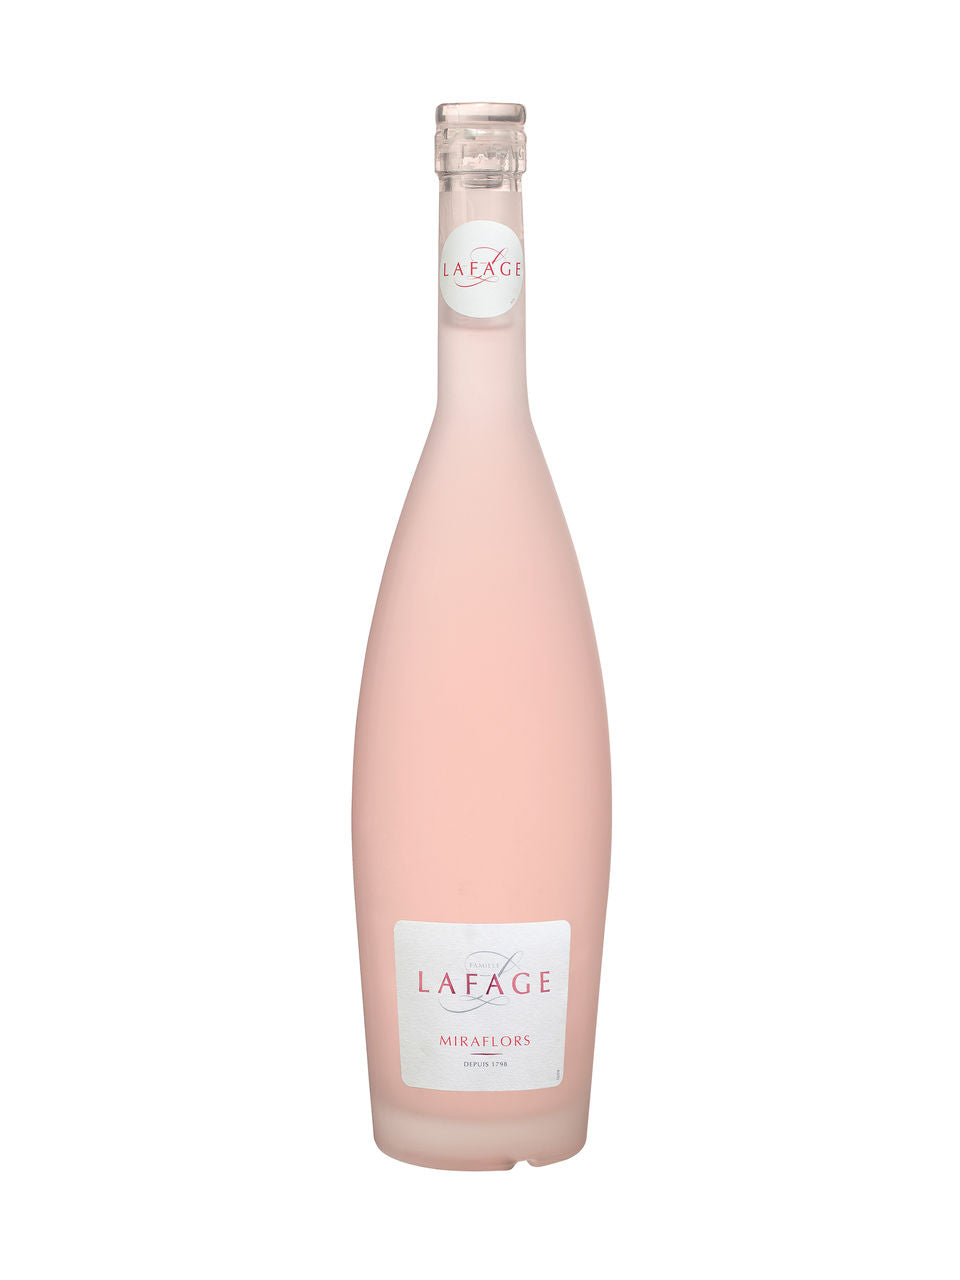 Domaine Lafage Miraflors Rose Cotes Du Roussillon AOC 750 ml bottle